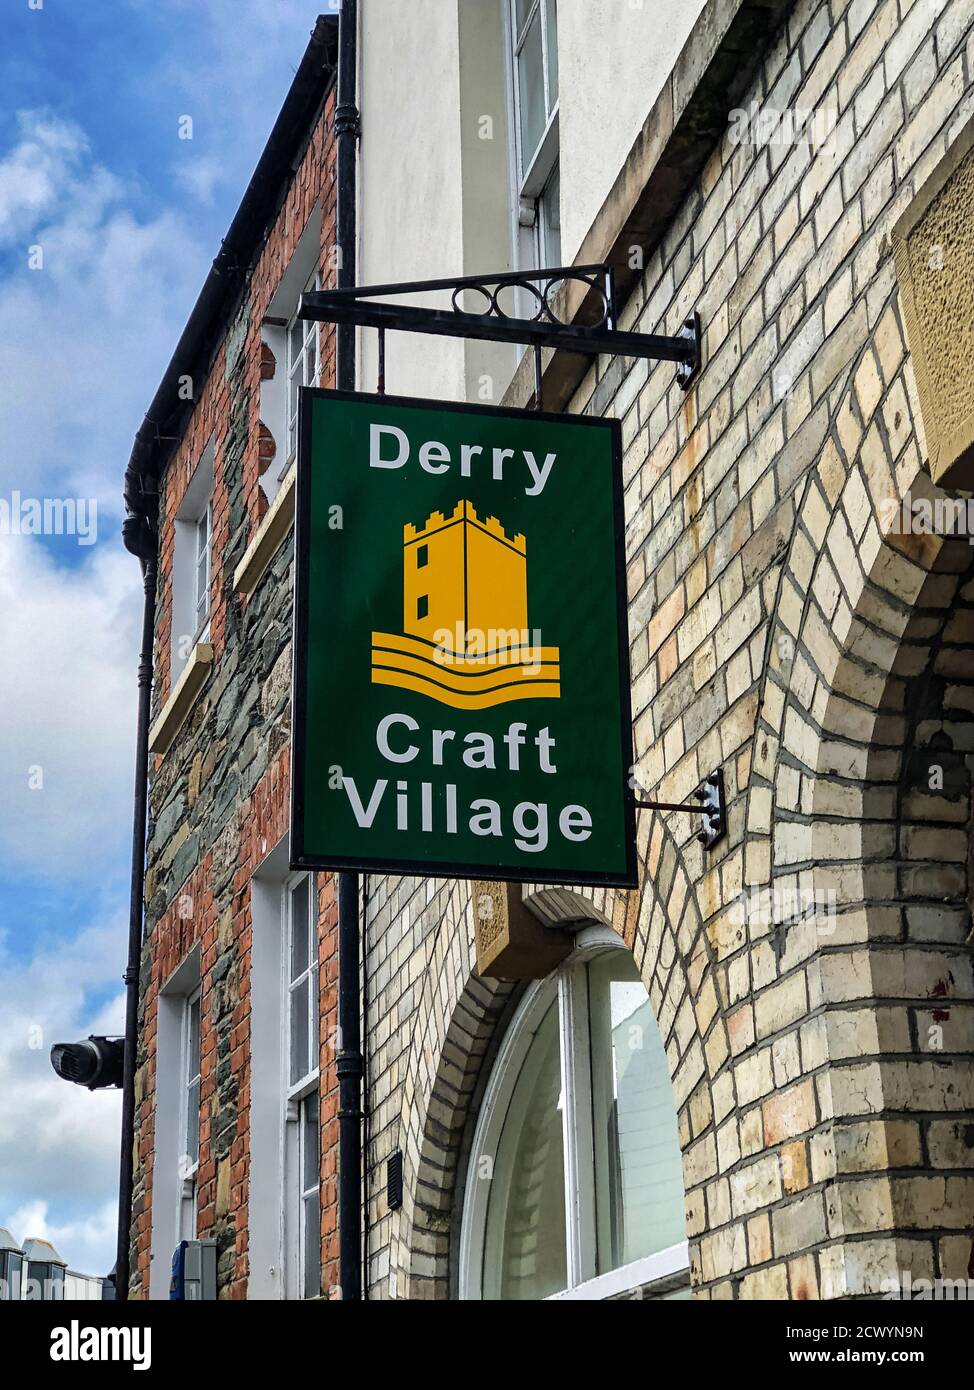 Derry, Nordirland - 25. September 2020: Der Vordereingang und das Schild für das Craft Village in Derry Nordirland. Stockfoto